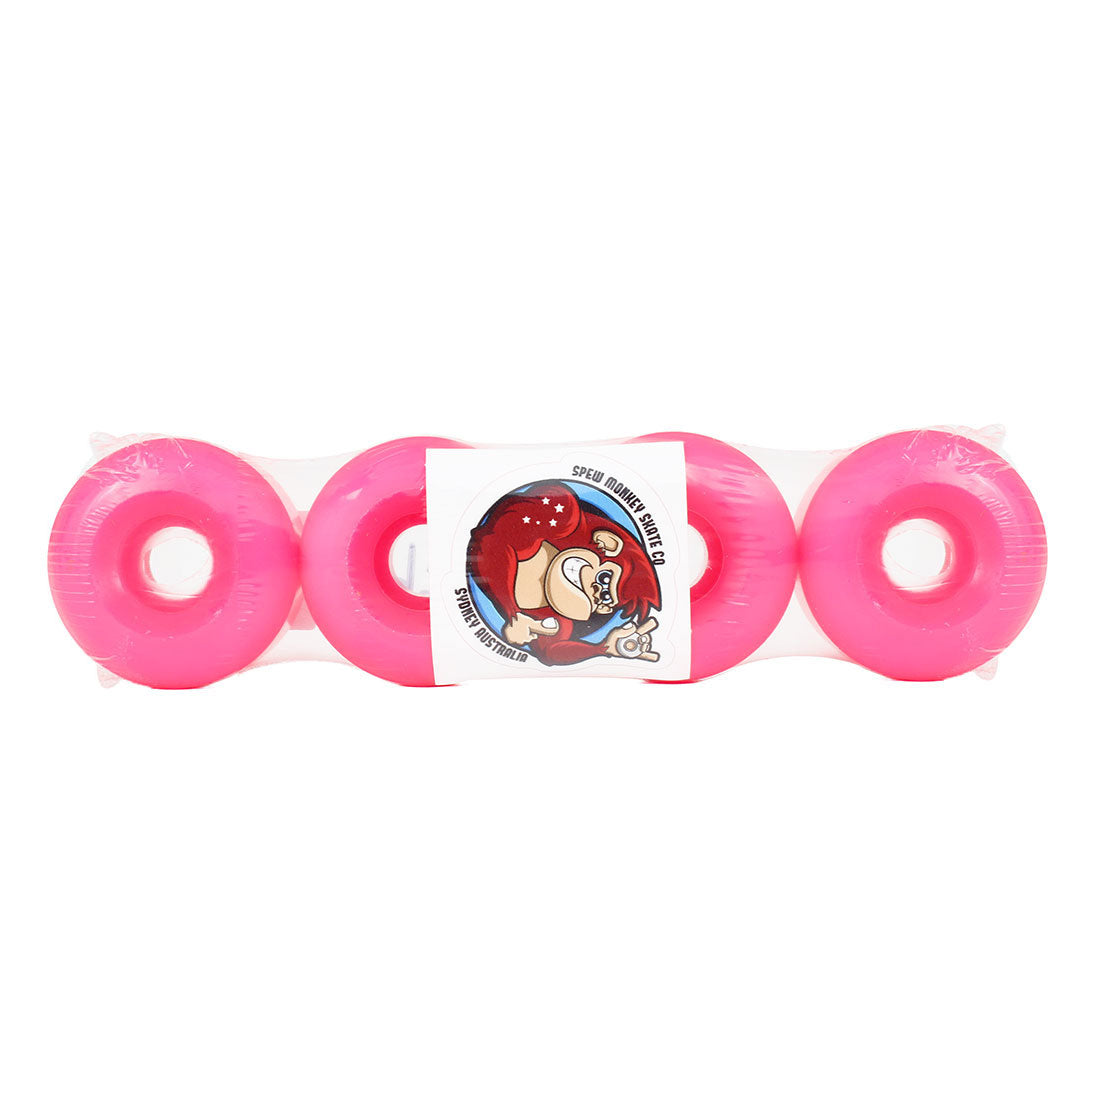 Spew Monkey #1s 54mm 97a Classic Wheels 4pk - Fluro Pink Skateboard Wheels